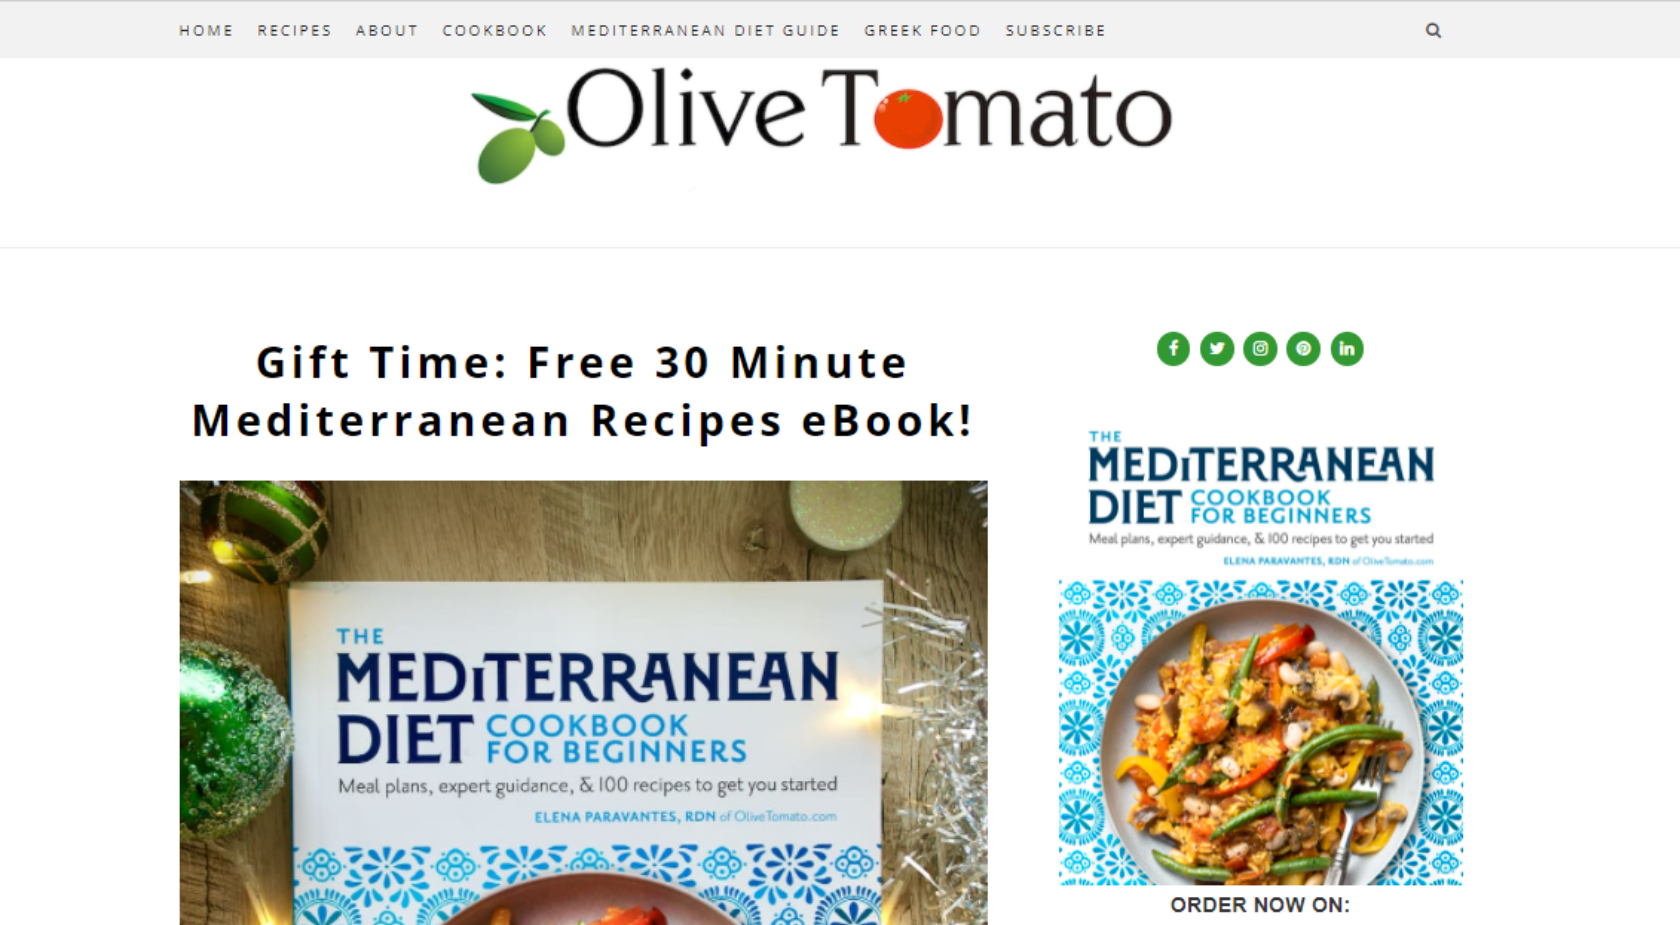 Olive Tomato Mediterranean Diet blog homepage